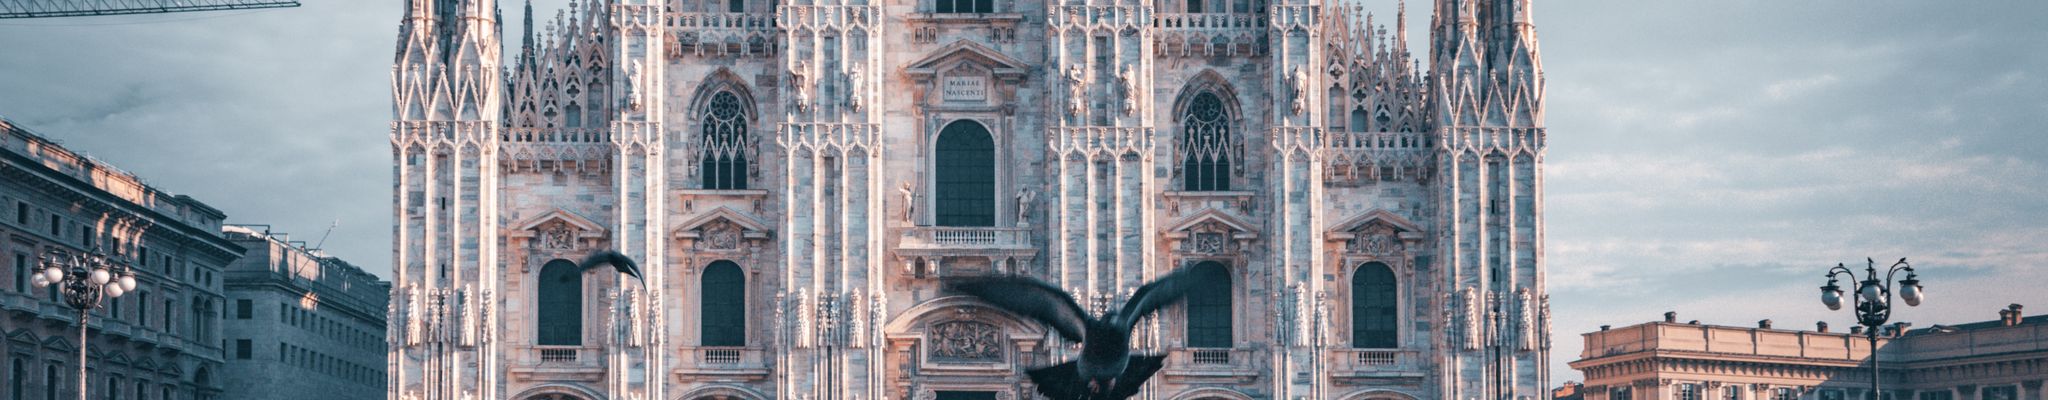 Καθεδρικός ναός του Μιλάνου - Το Duomo